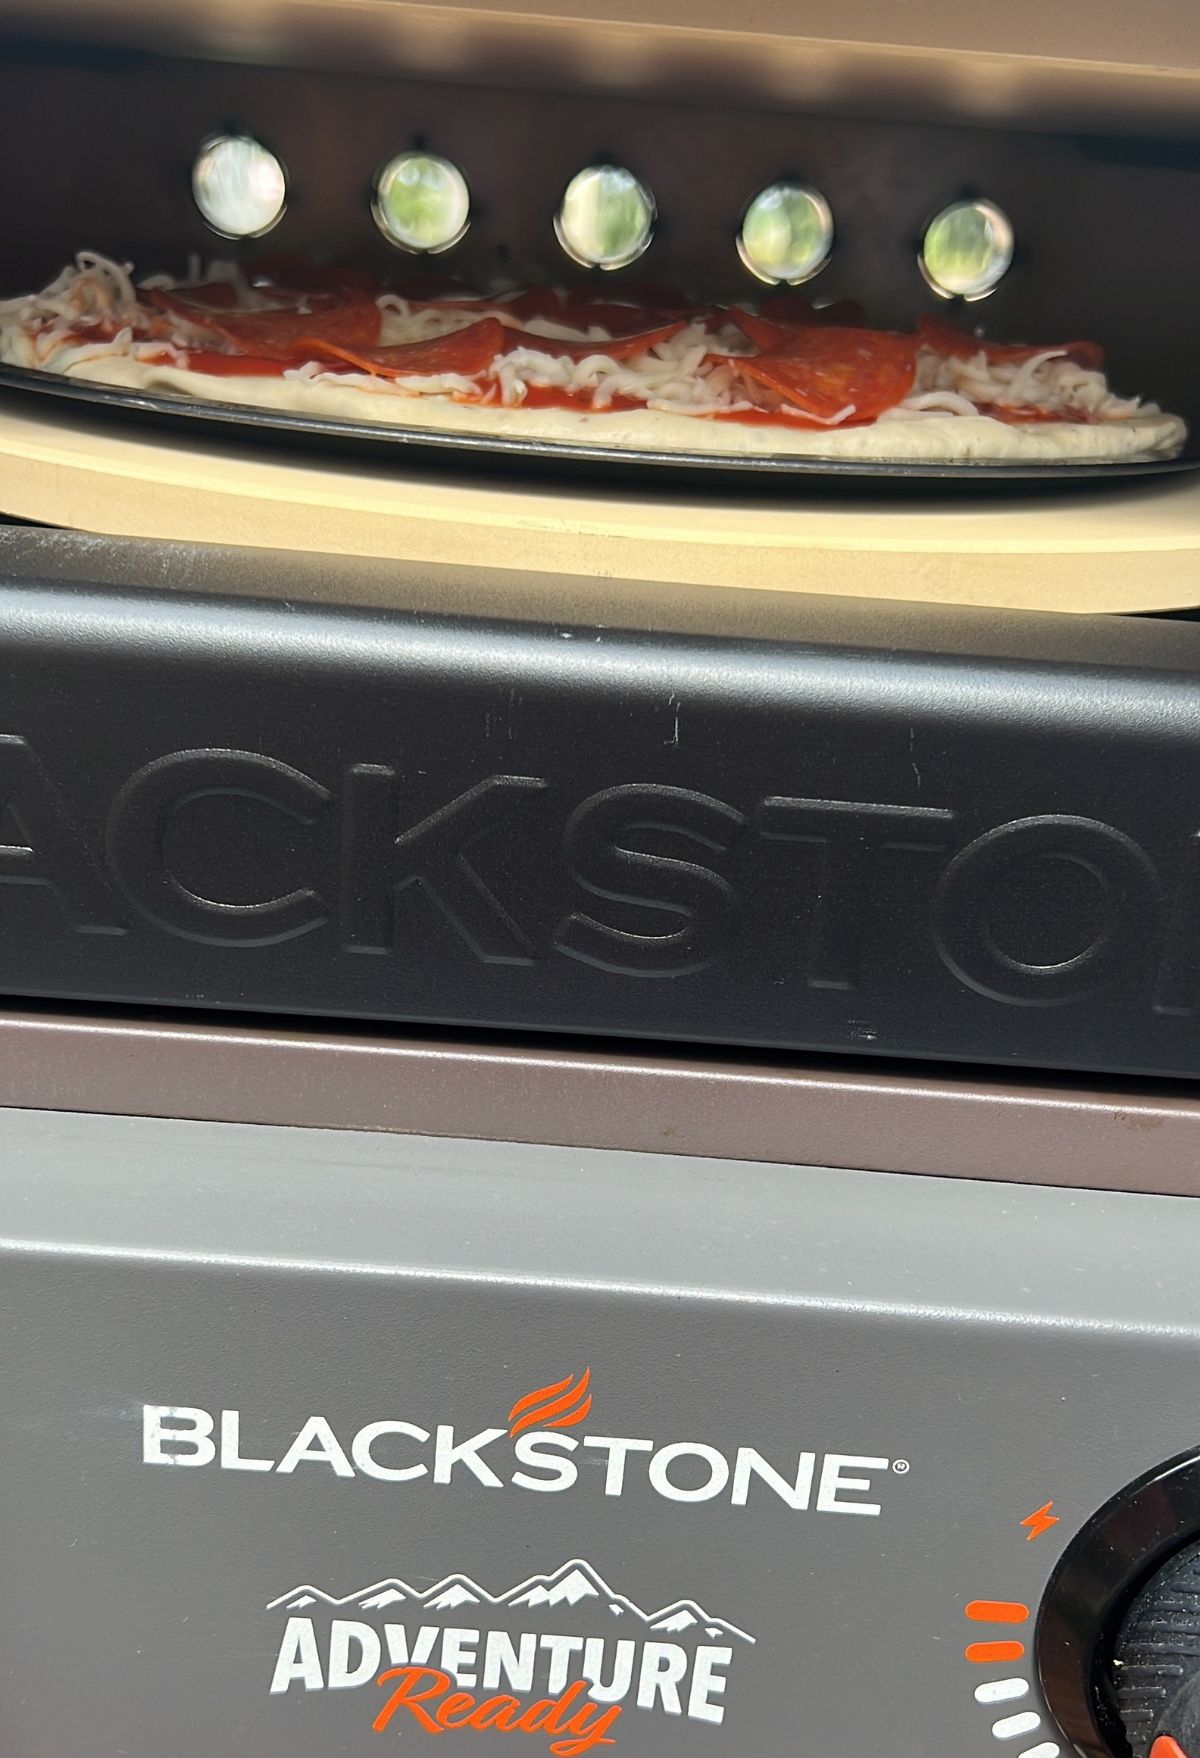 Blackstone adventure pizza oven.